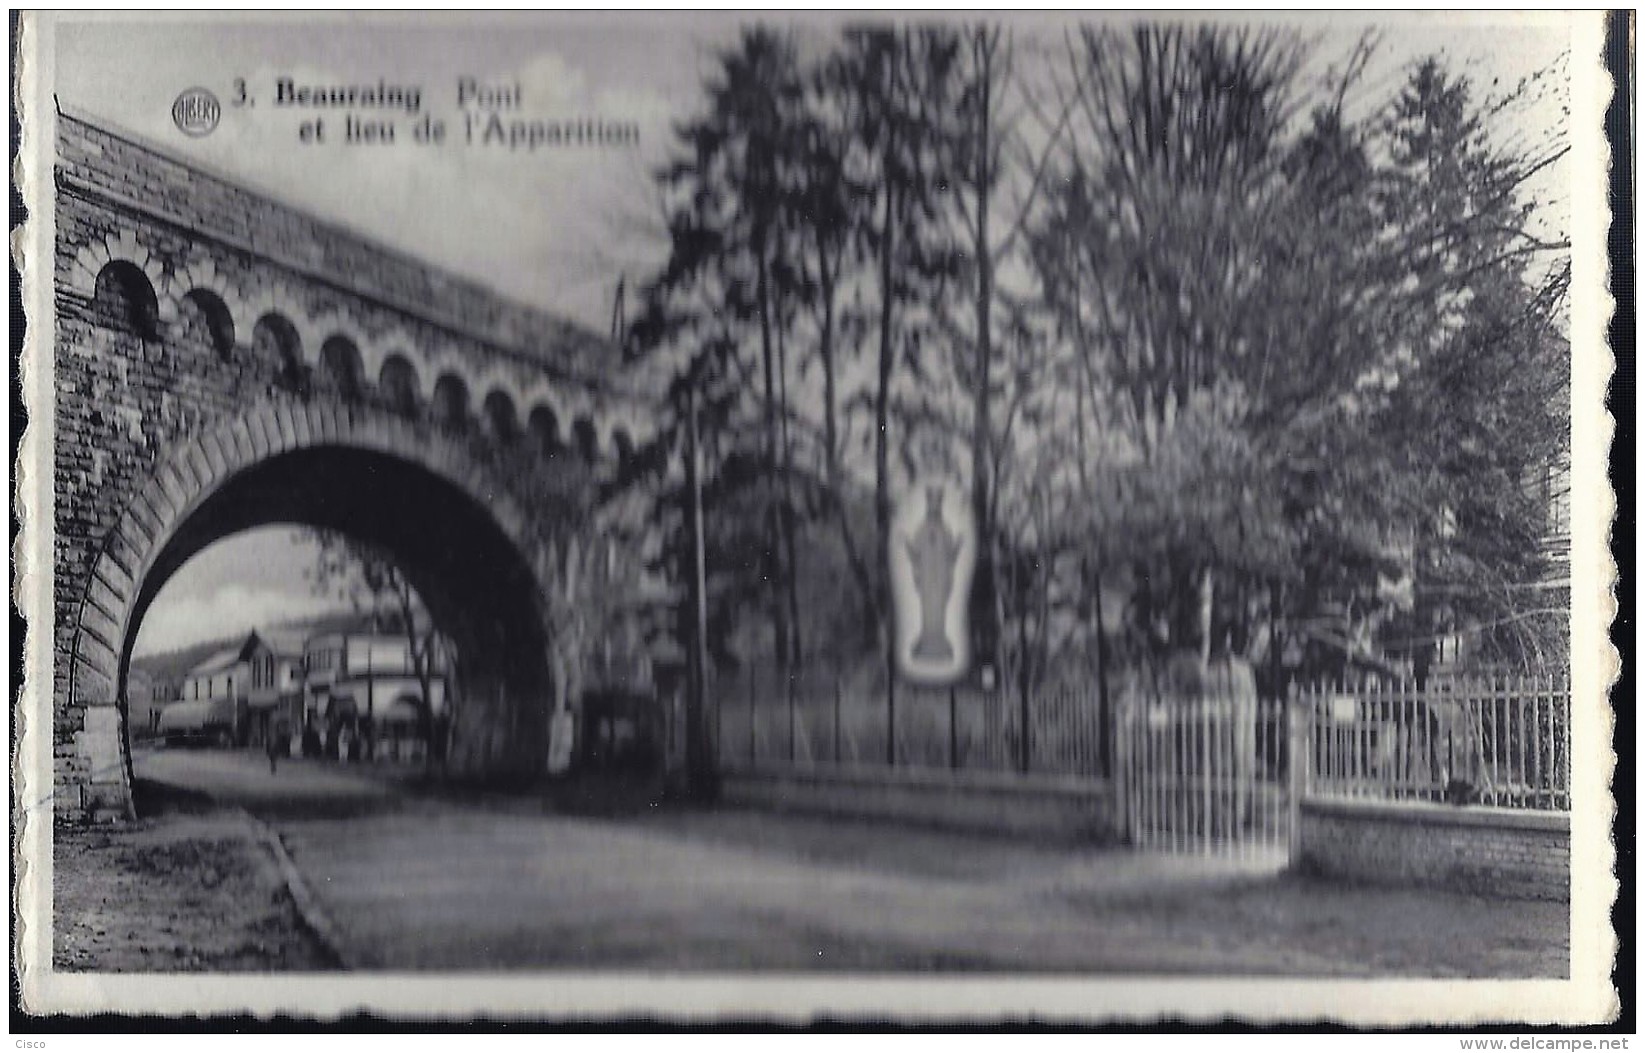 BEAURAING Pont Et Lieu De L'aparition - Beauraing